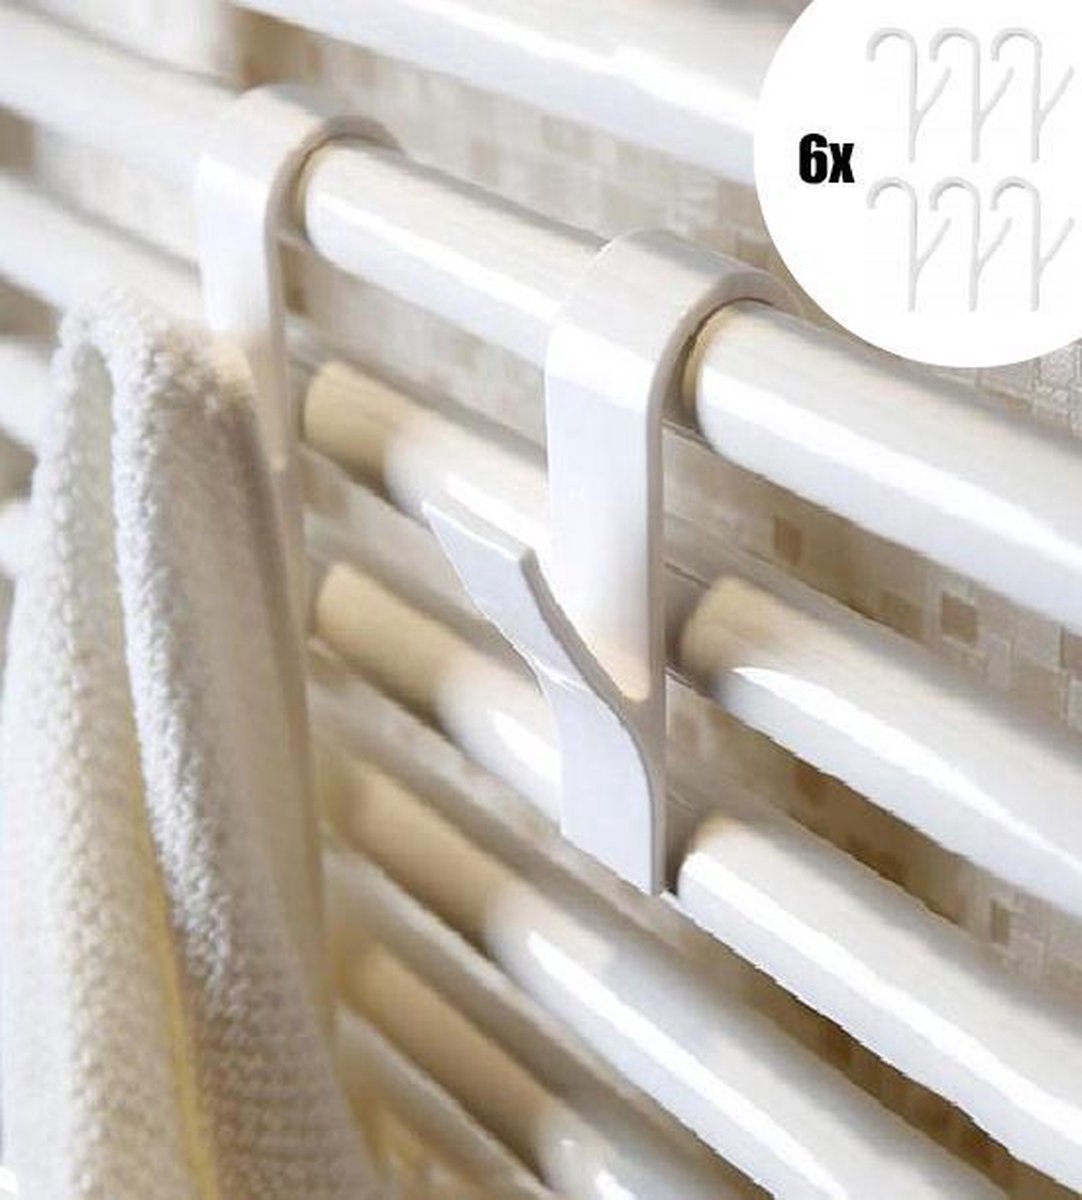 6x Handdoek Haak - Kleding Haak Voor Radiator - Handdoek Houder Hangend aan Verwarming - Badkamer Haken Hangend